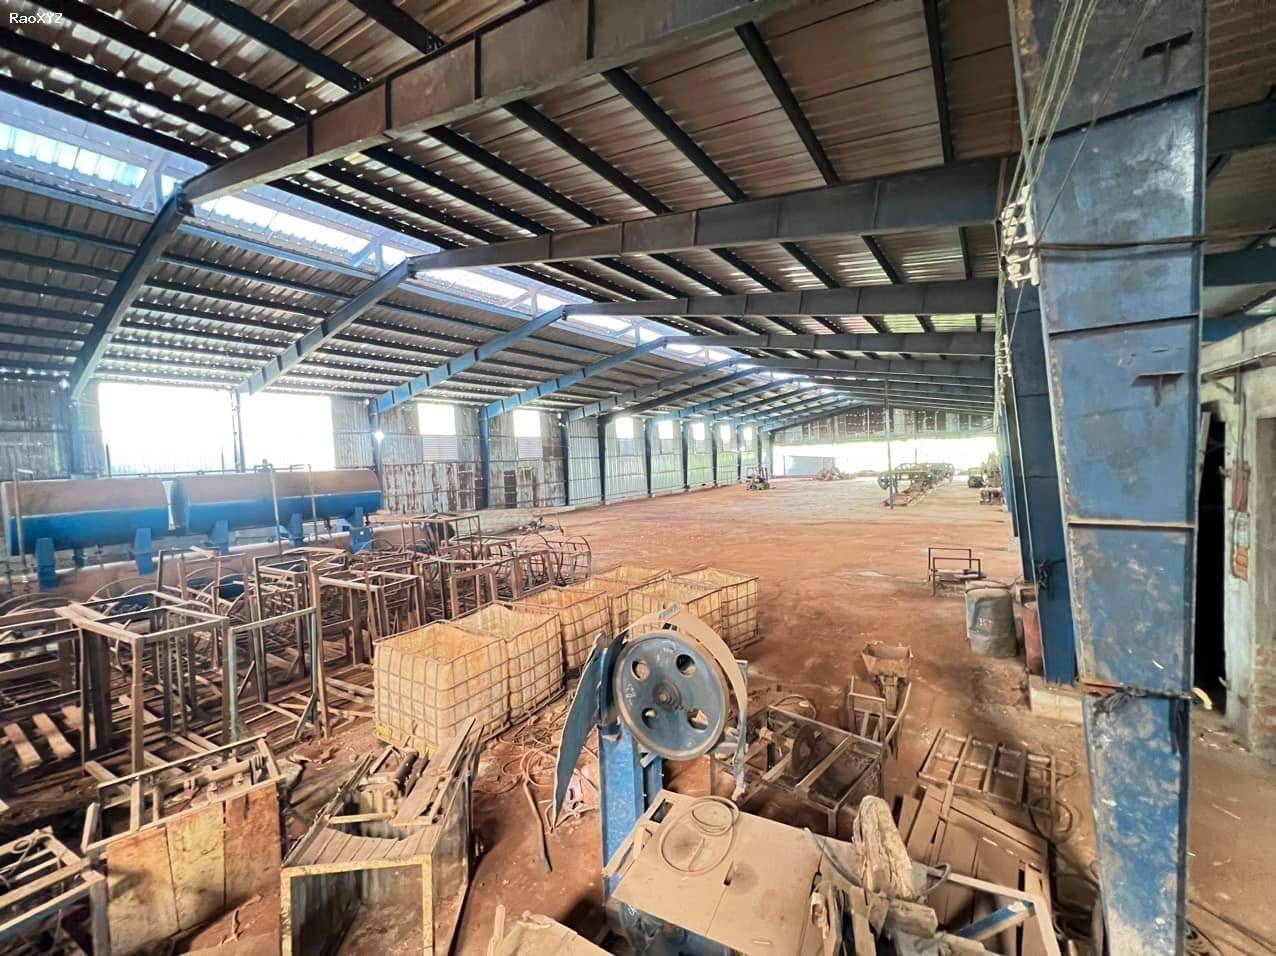 Kho xưởng cho thuê tại An Điền Bến Cát BD.lý tưởng để phát triển kinh doanh trong ngành gỗ cưa sẽ